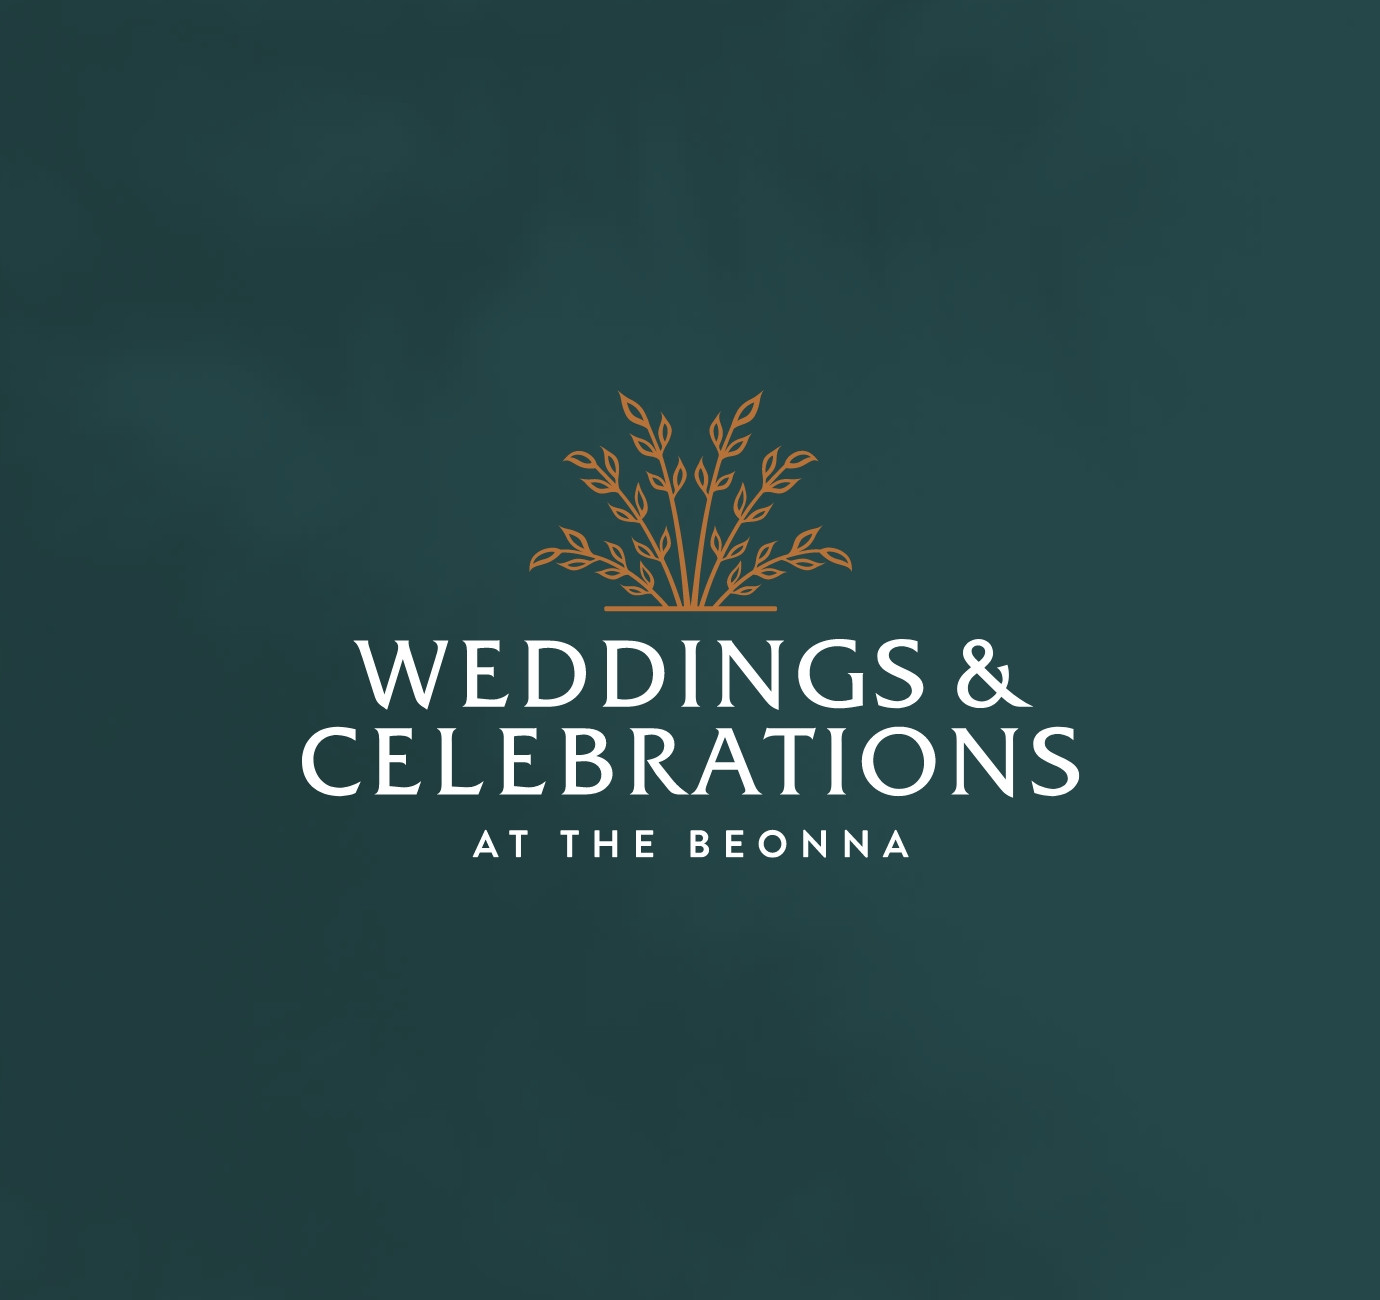 Weddings vintage logo design by Root Studio